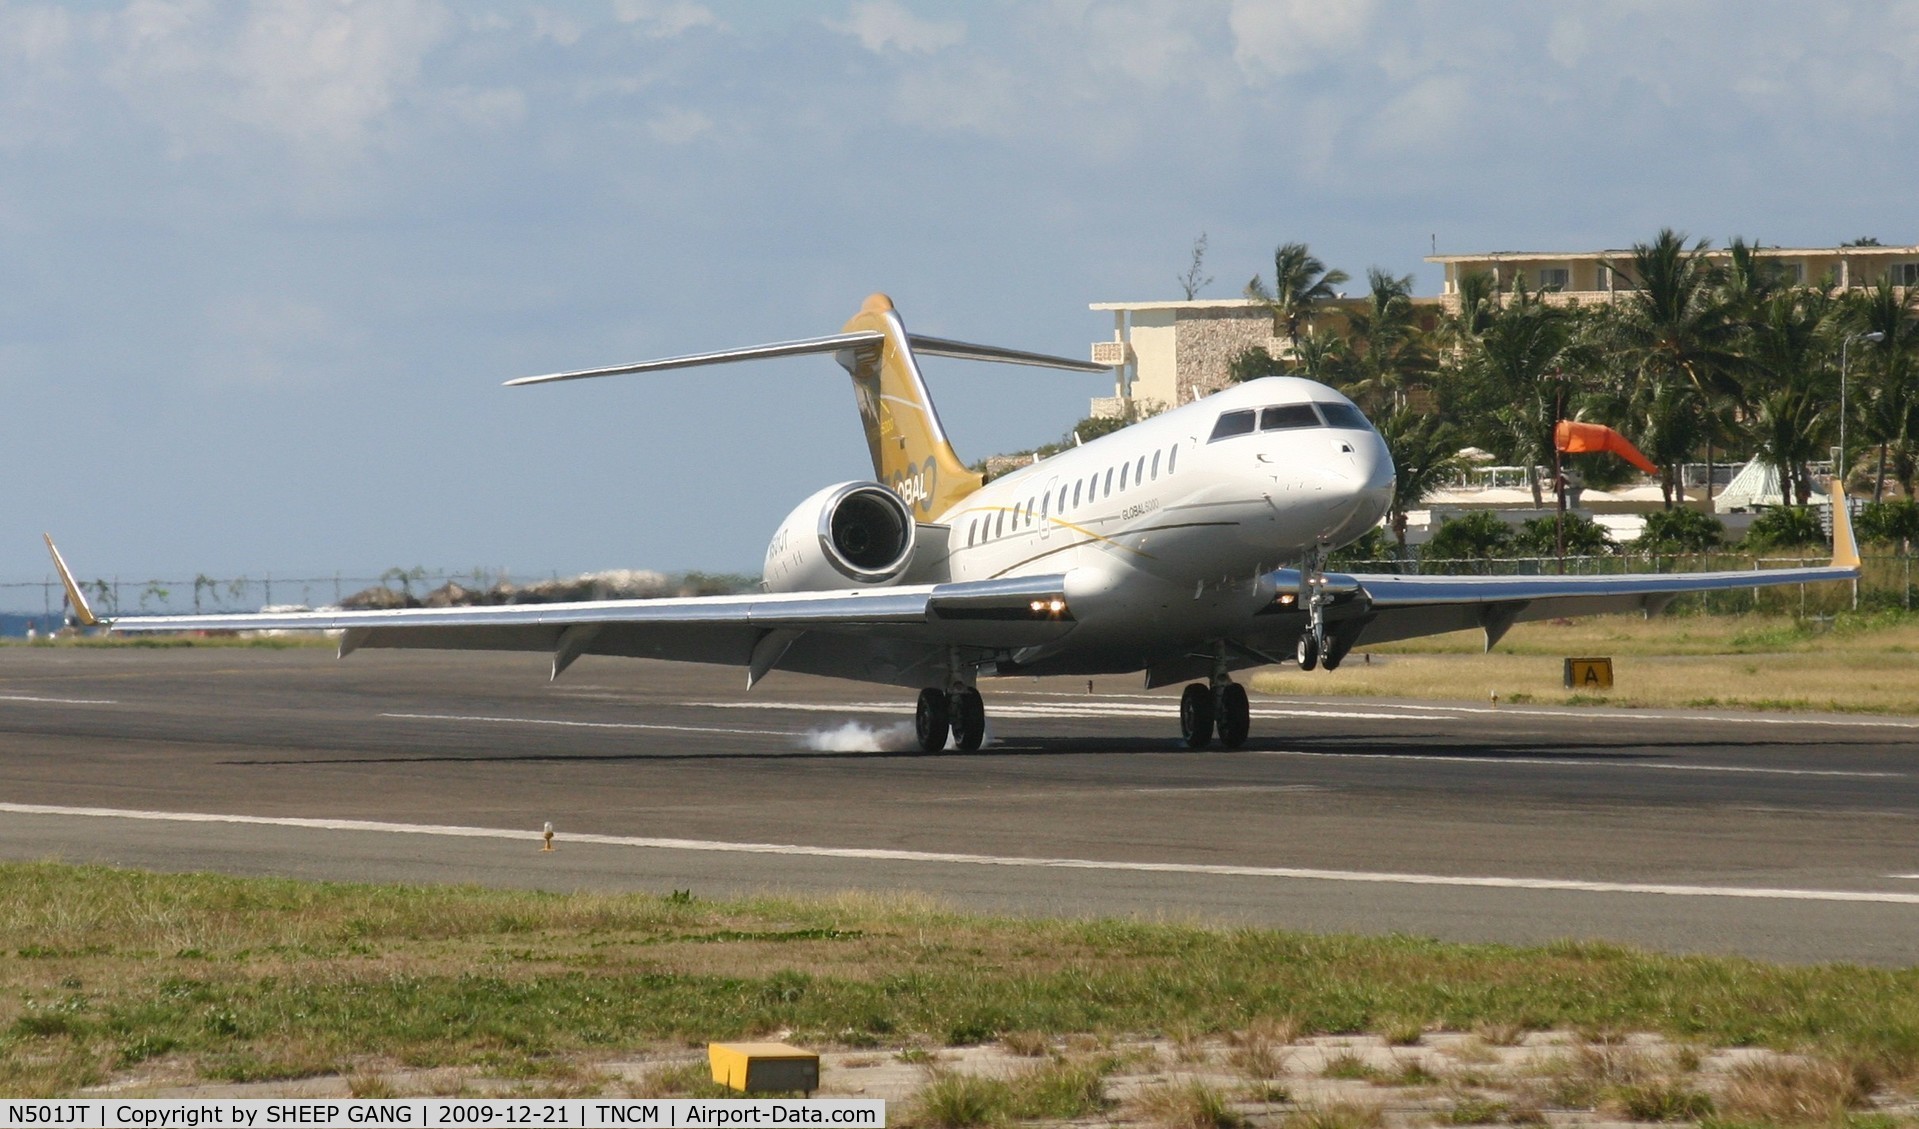 N501JT, 2007 Bombardier BD-700-1A10 Global 5000 C/N 9265, N501JT landing at TNCM on runway 10